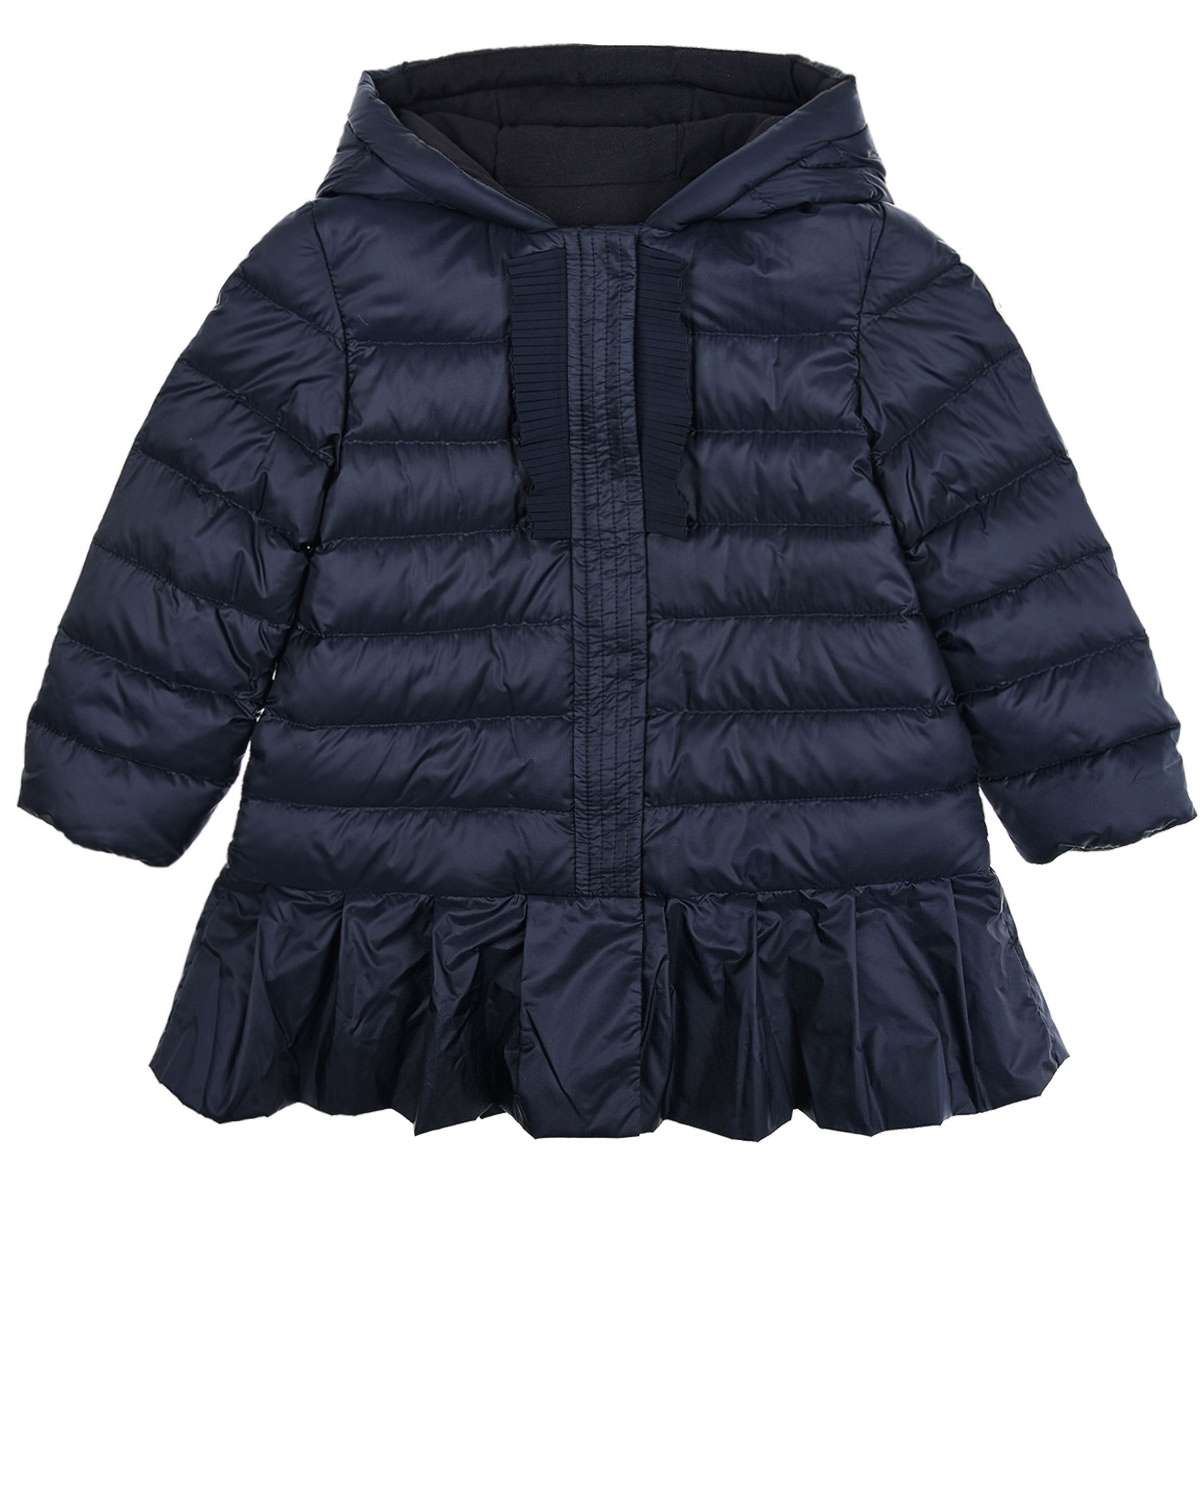 Стеганая куртка с рюшами Moncler детская, размер 92, цвет синий